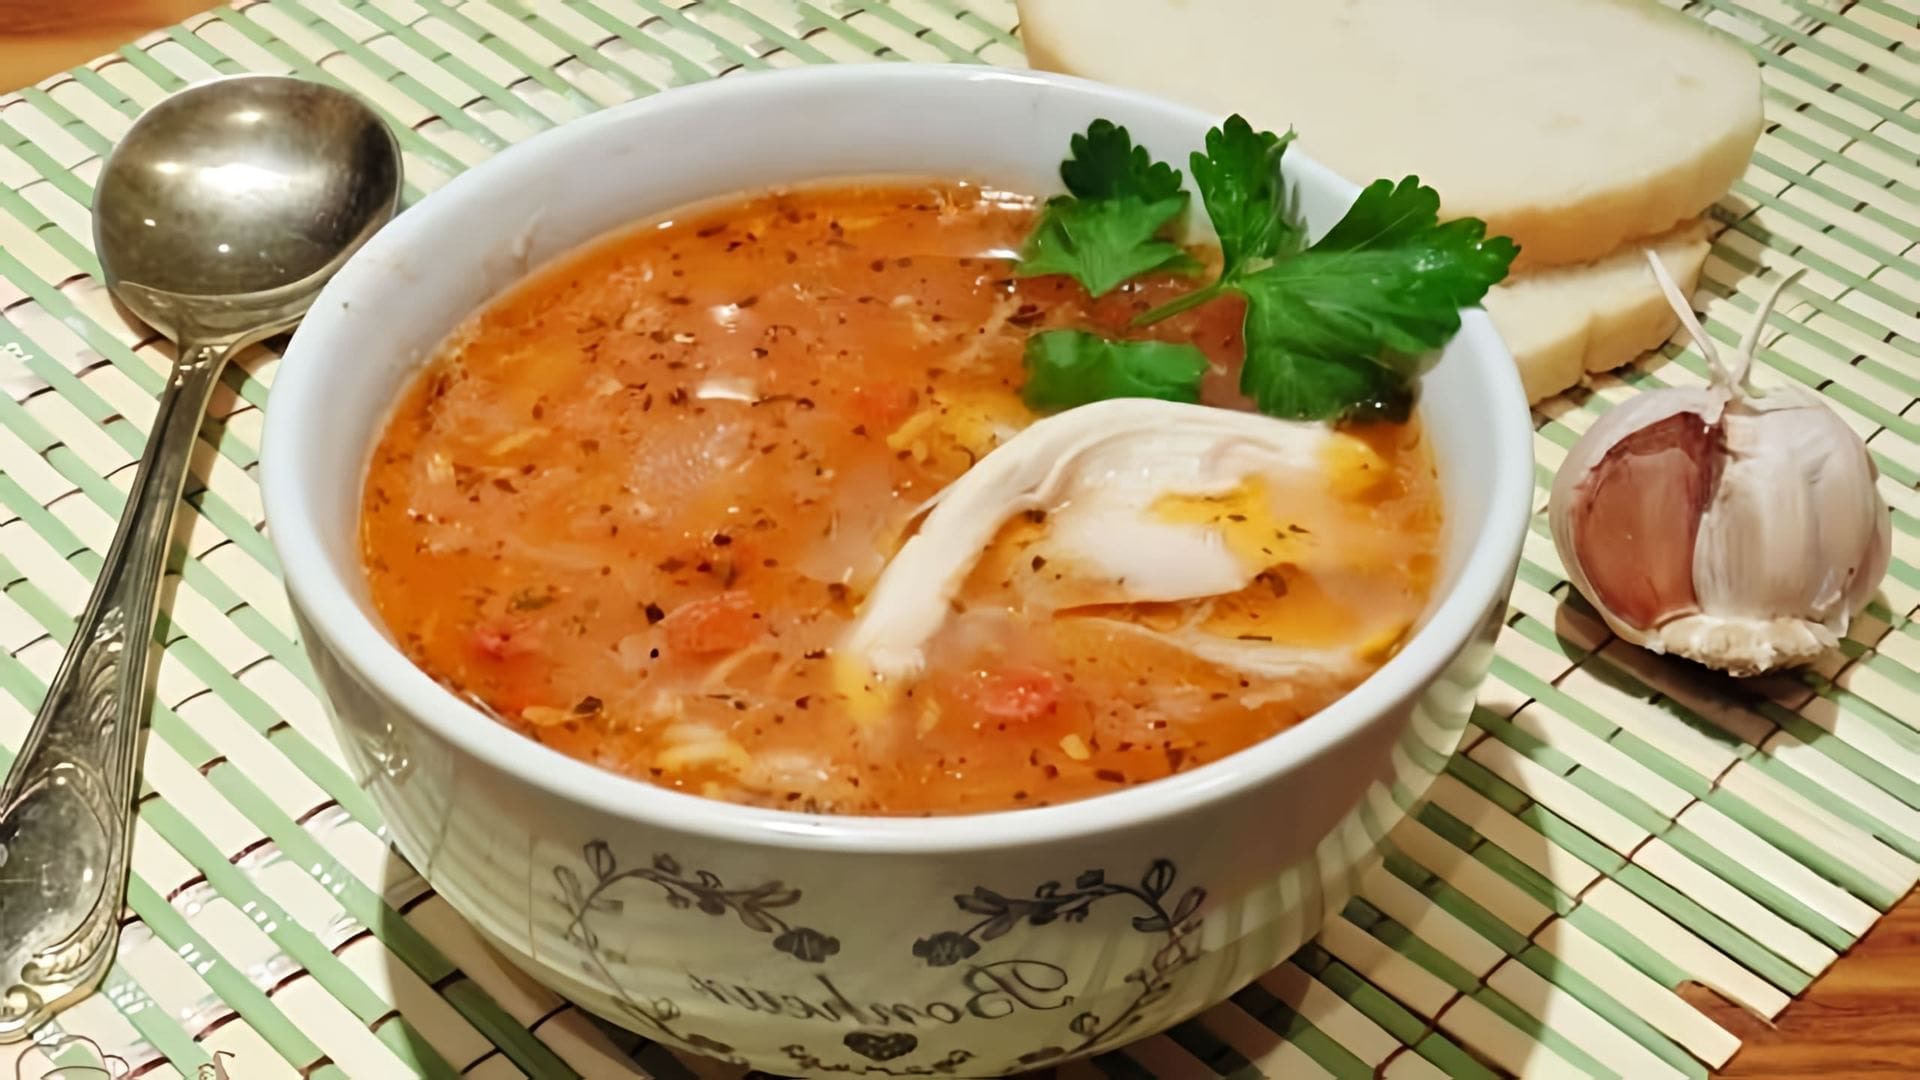 В этом видео демонстрируется быстрый рецепт приготовления супа харчо